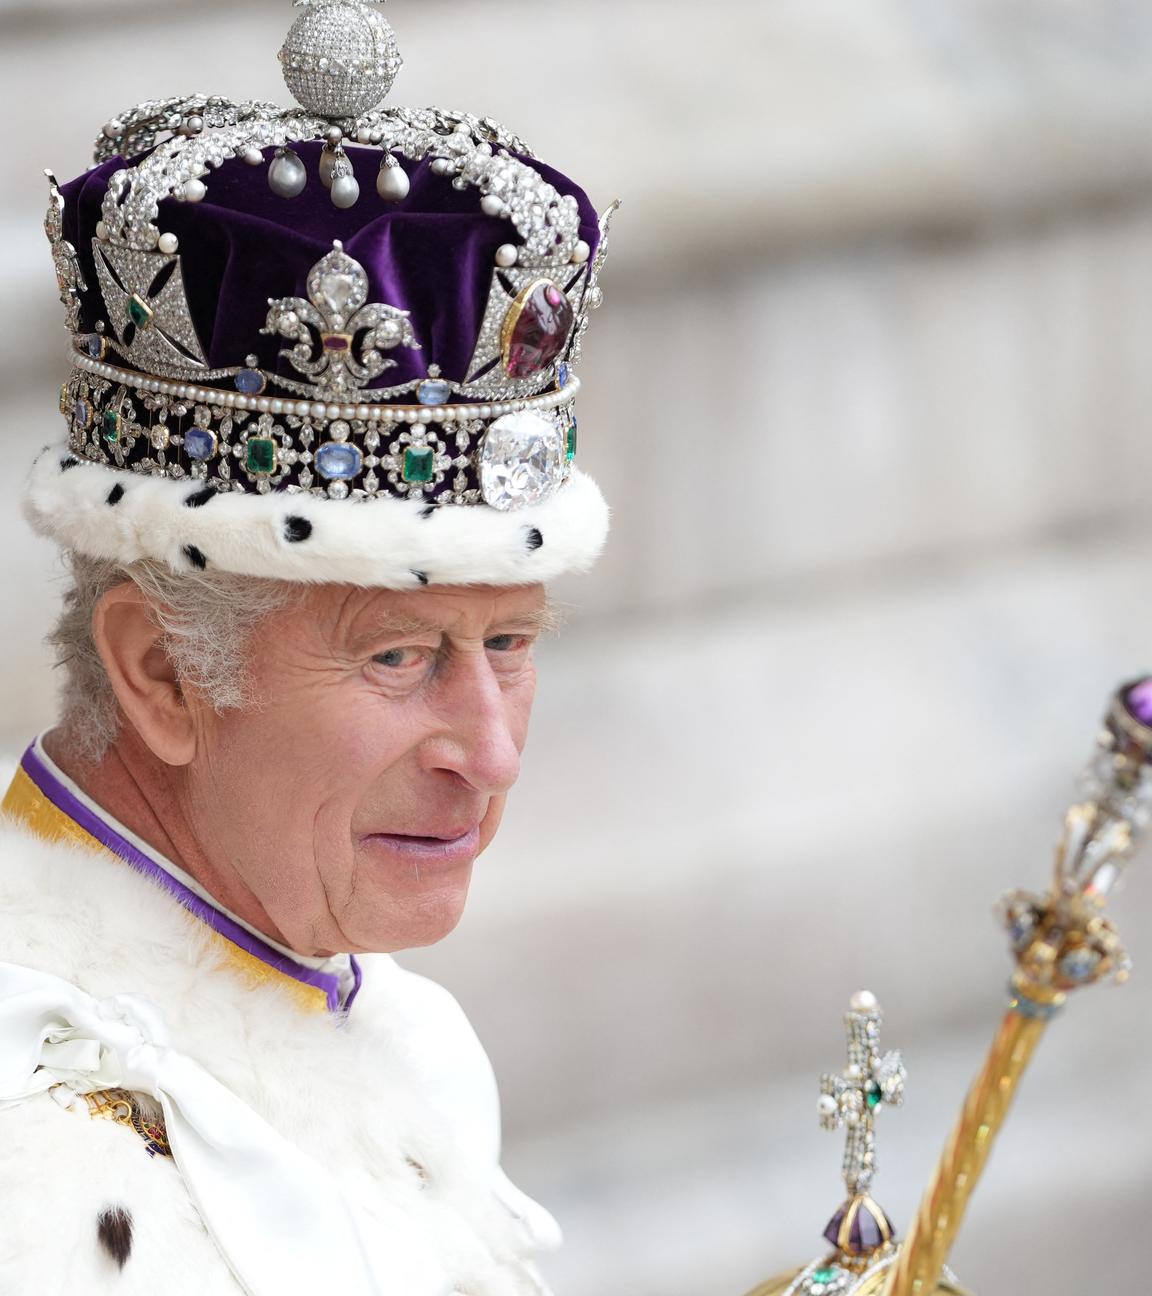 König Charles bei seiner Krönung vor einem Jahr, mit Krone und Zepter